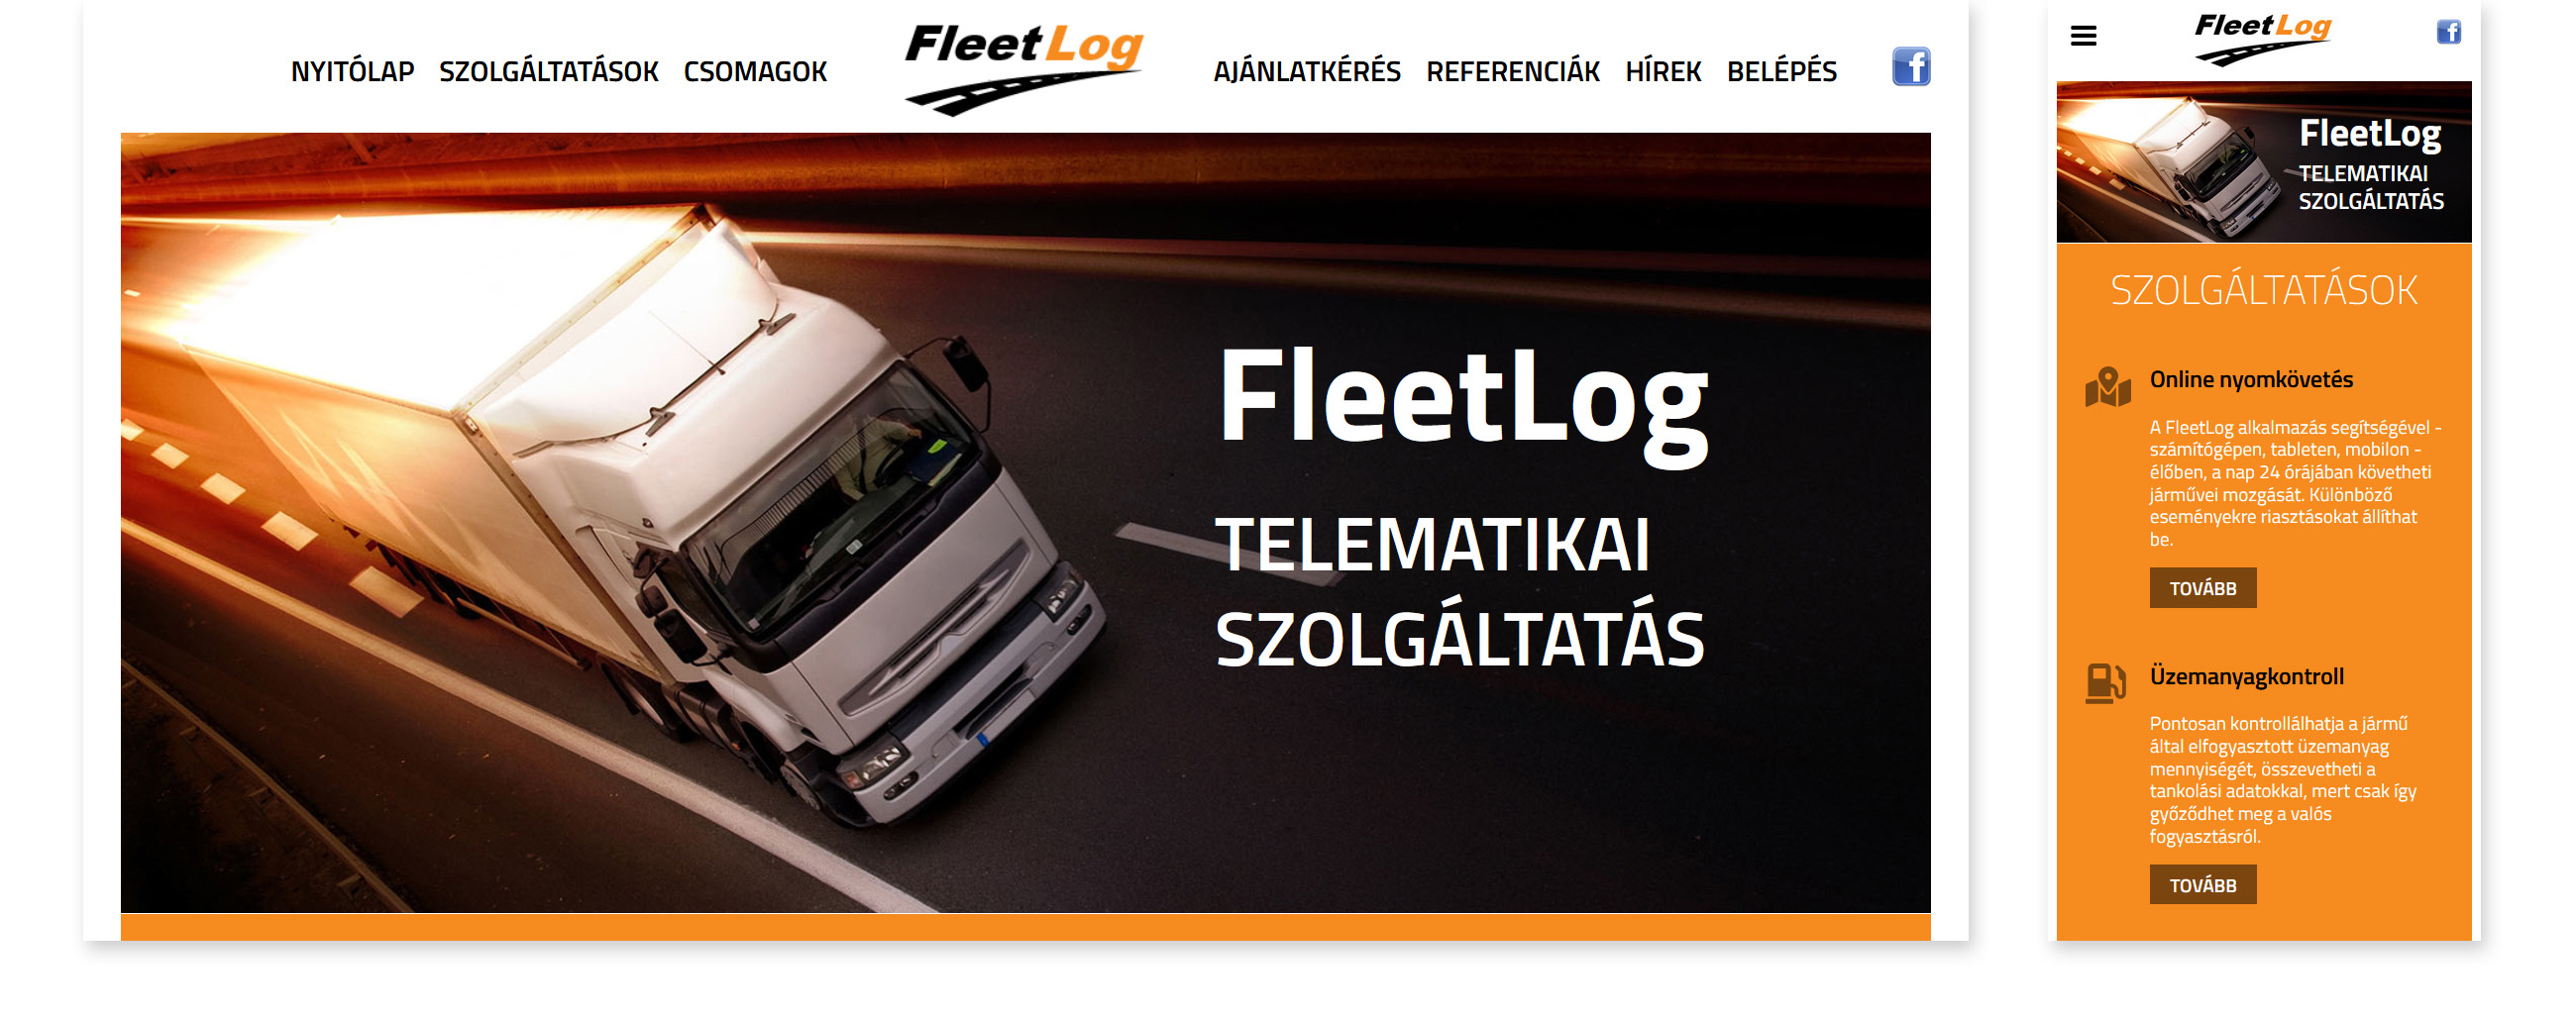 Fleetlog Telematikai szolgáltatás - honlaptervezés